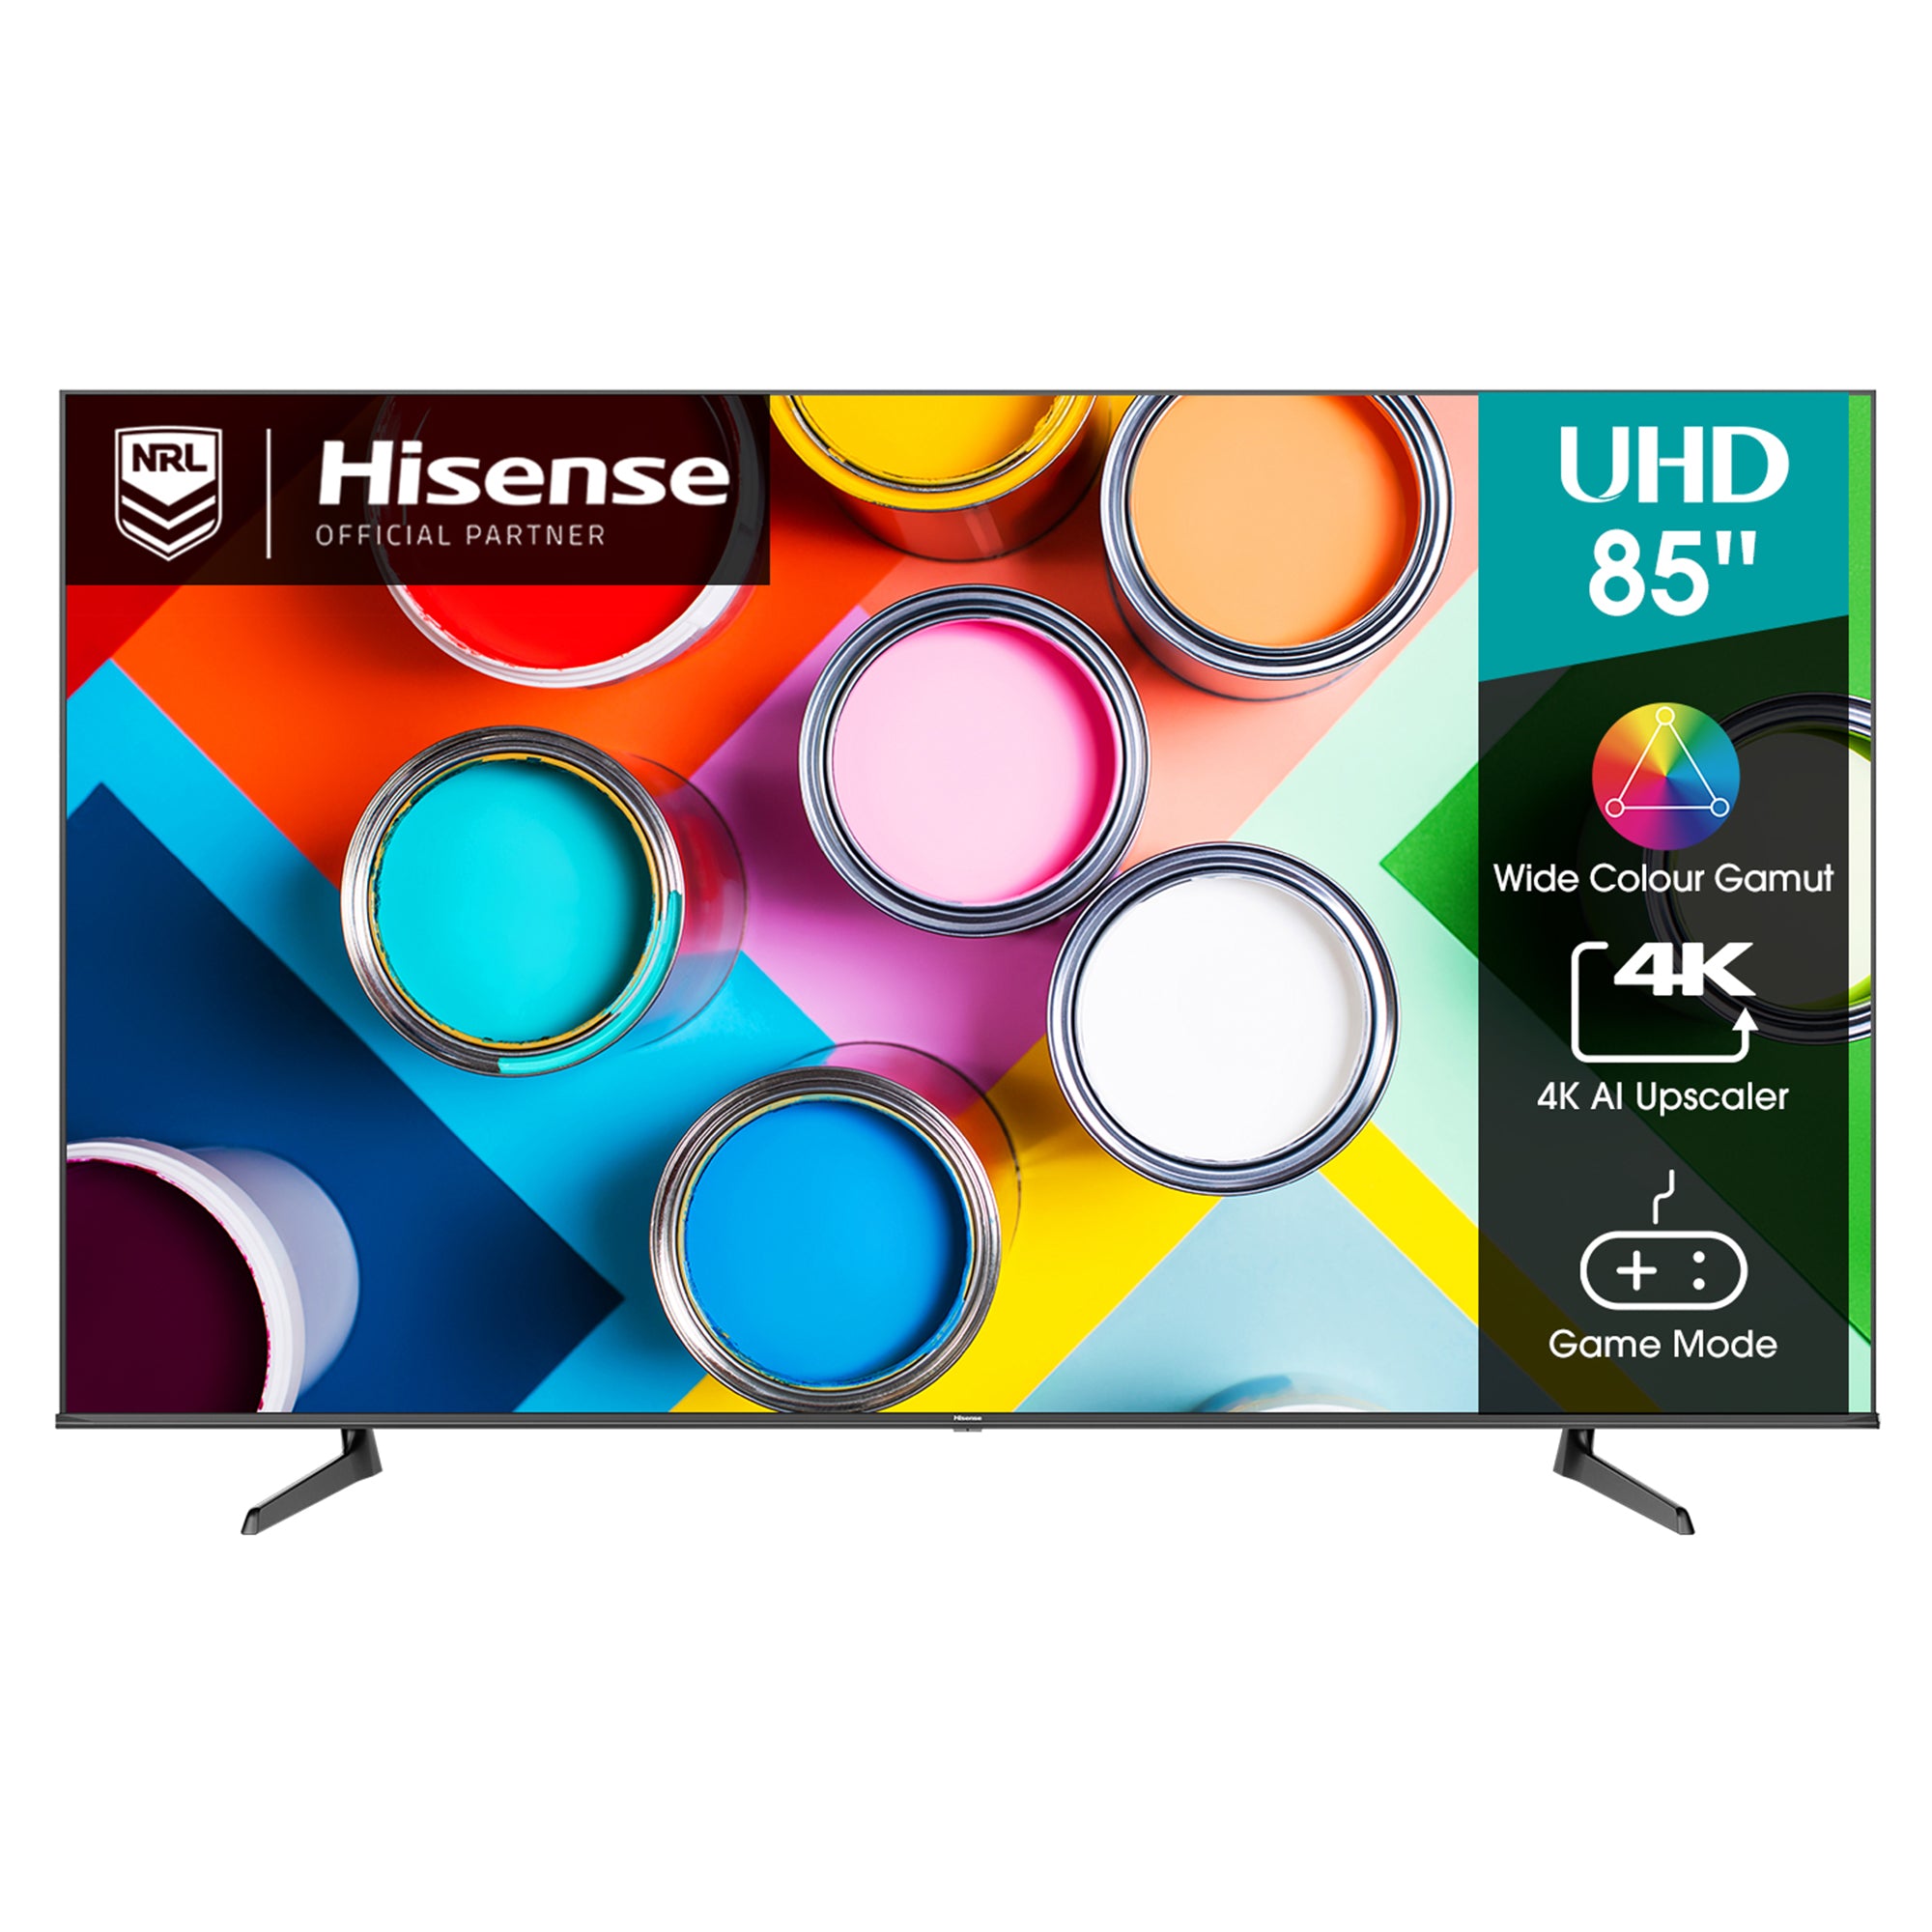 Hisense 85" Inch UHD 4K Smart Tv, 85A7HKEN